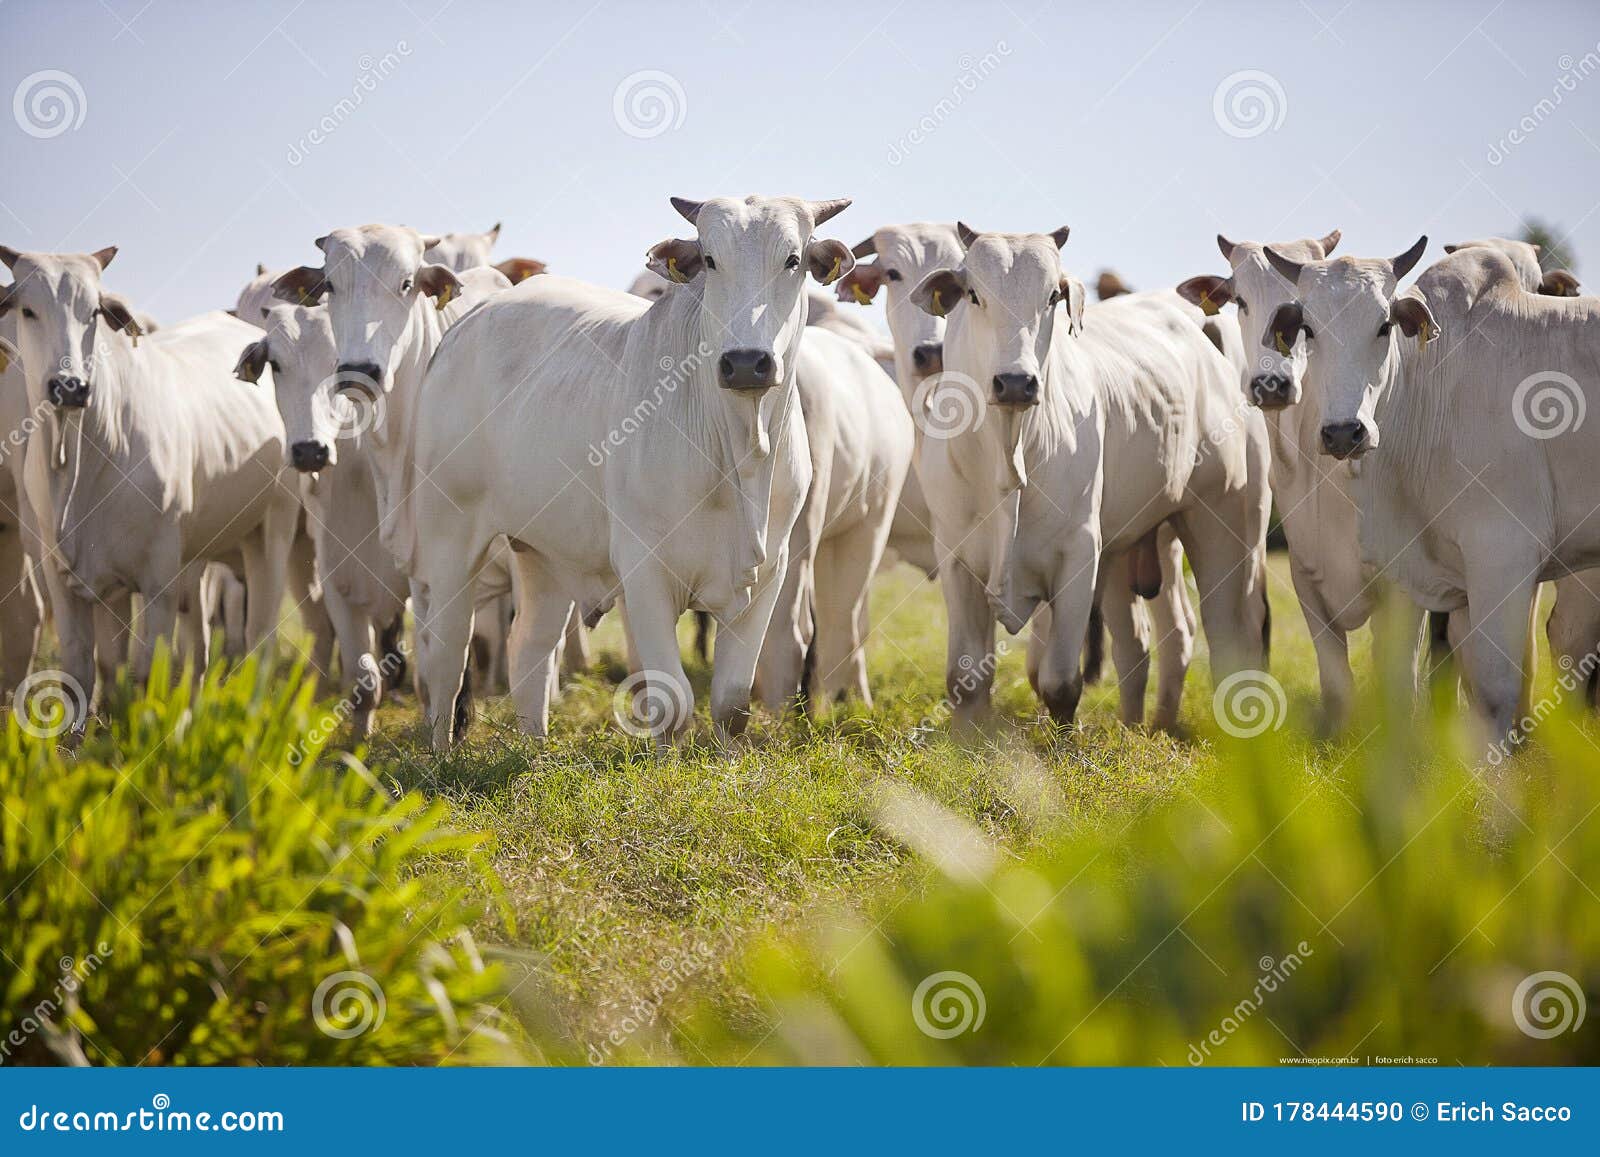 nellore cattle in the pasture of brazilian farms